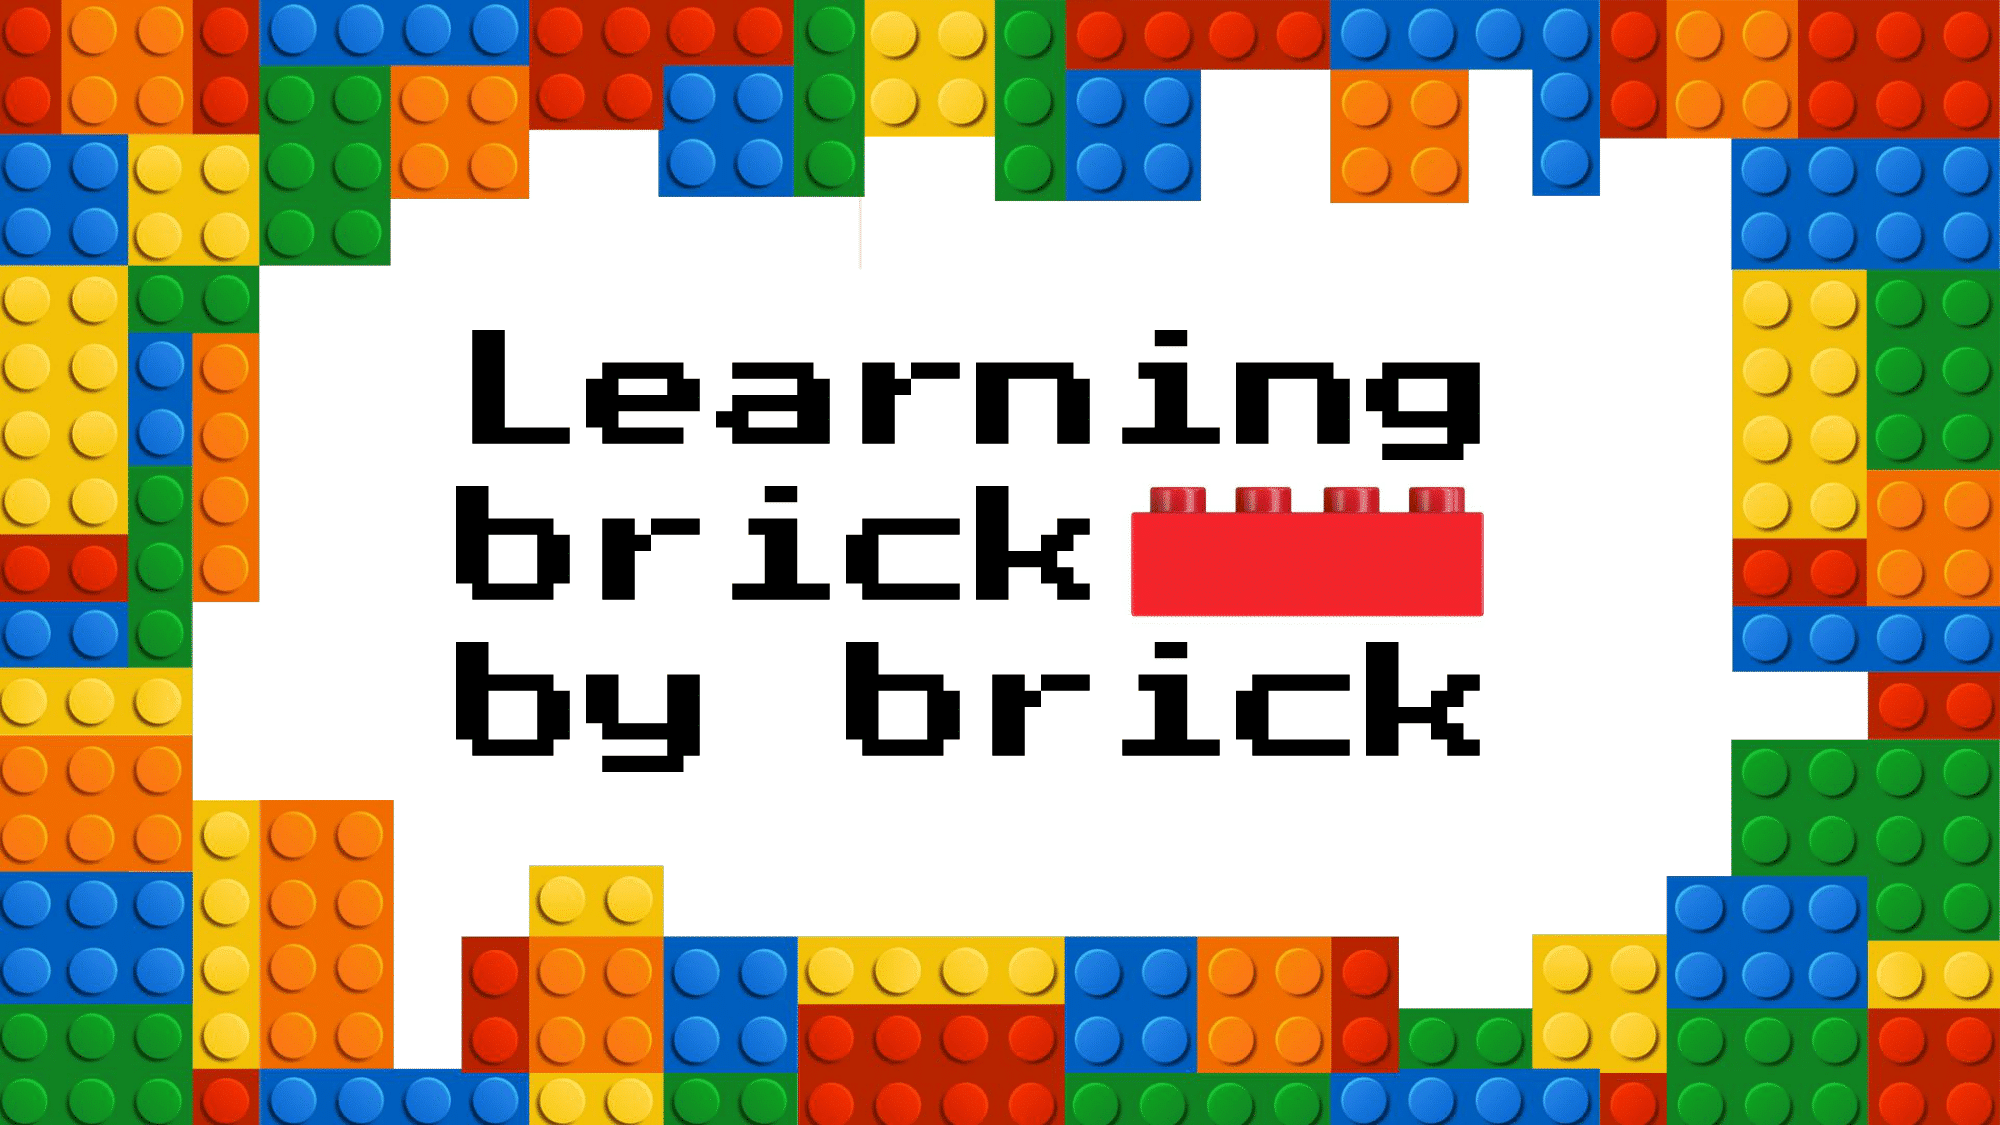 AdHeroes_Learning_Brick_by_Brick-01